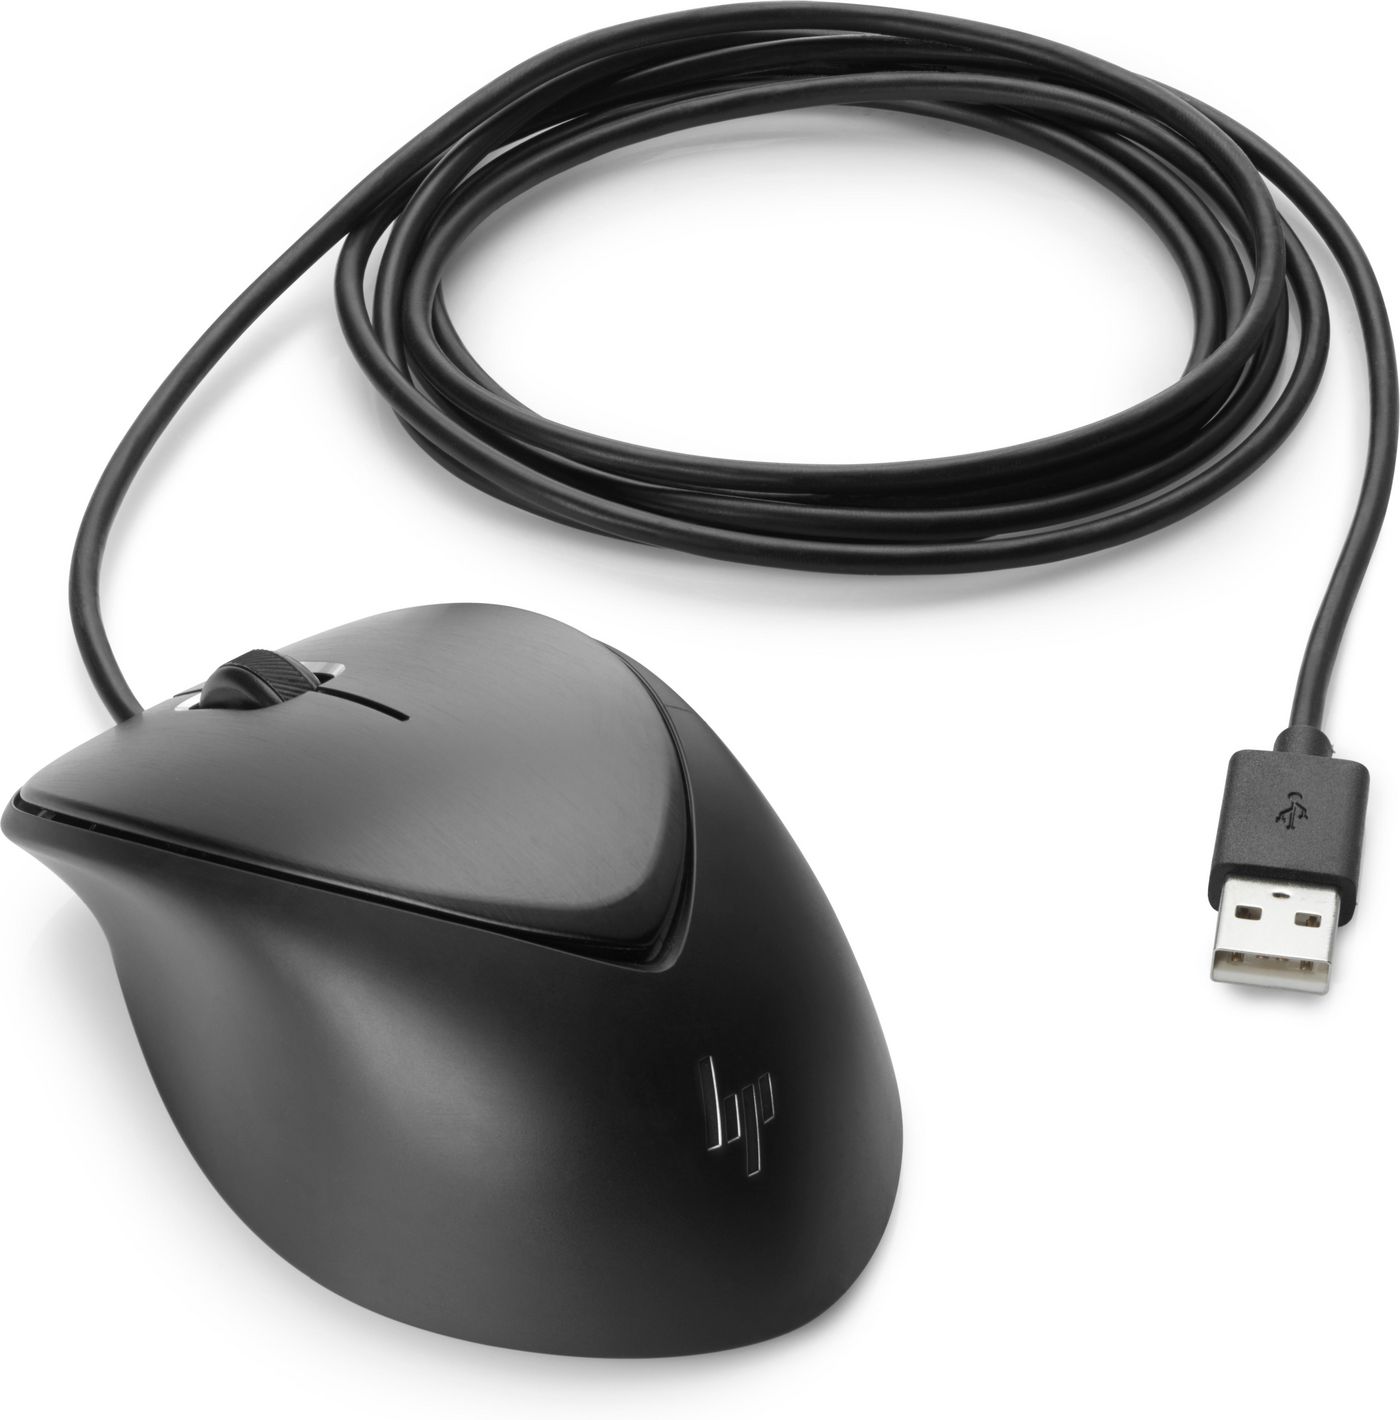 USB Premium Mouse